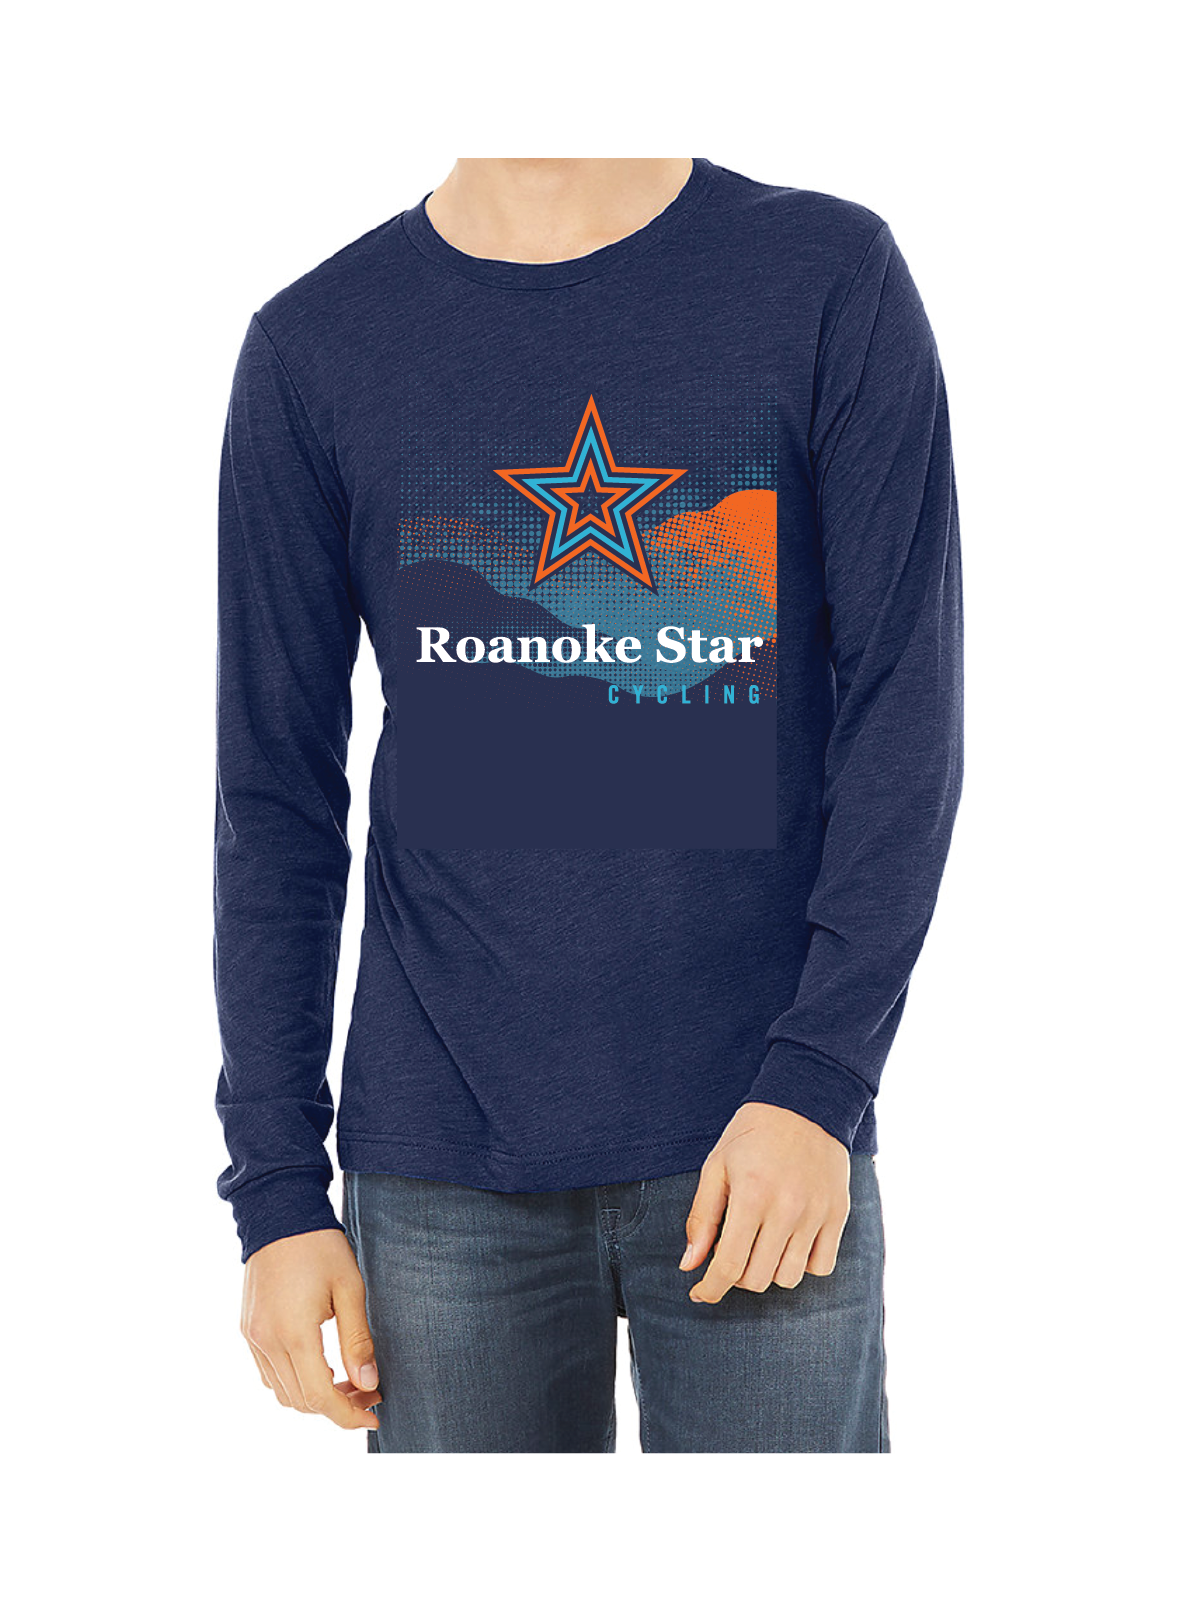 Roanoke Star Cycling Long Sleeve T-Shirt